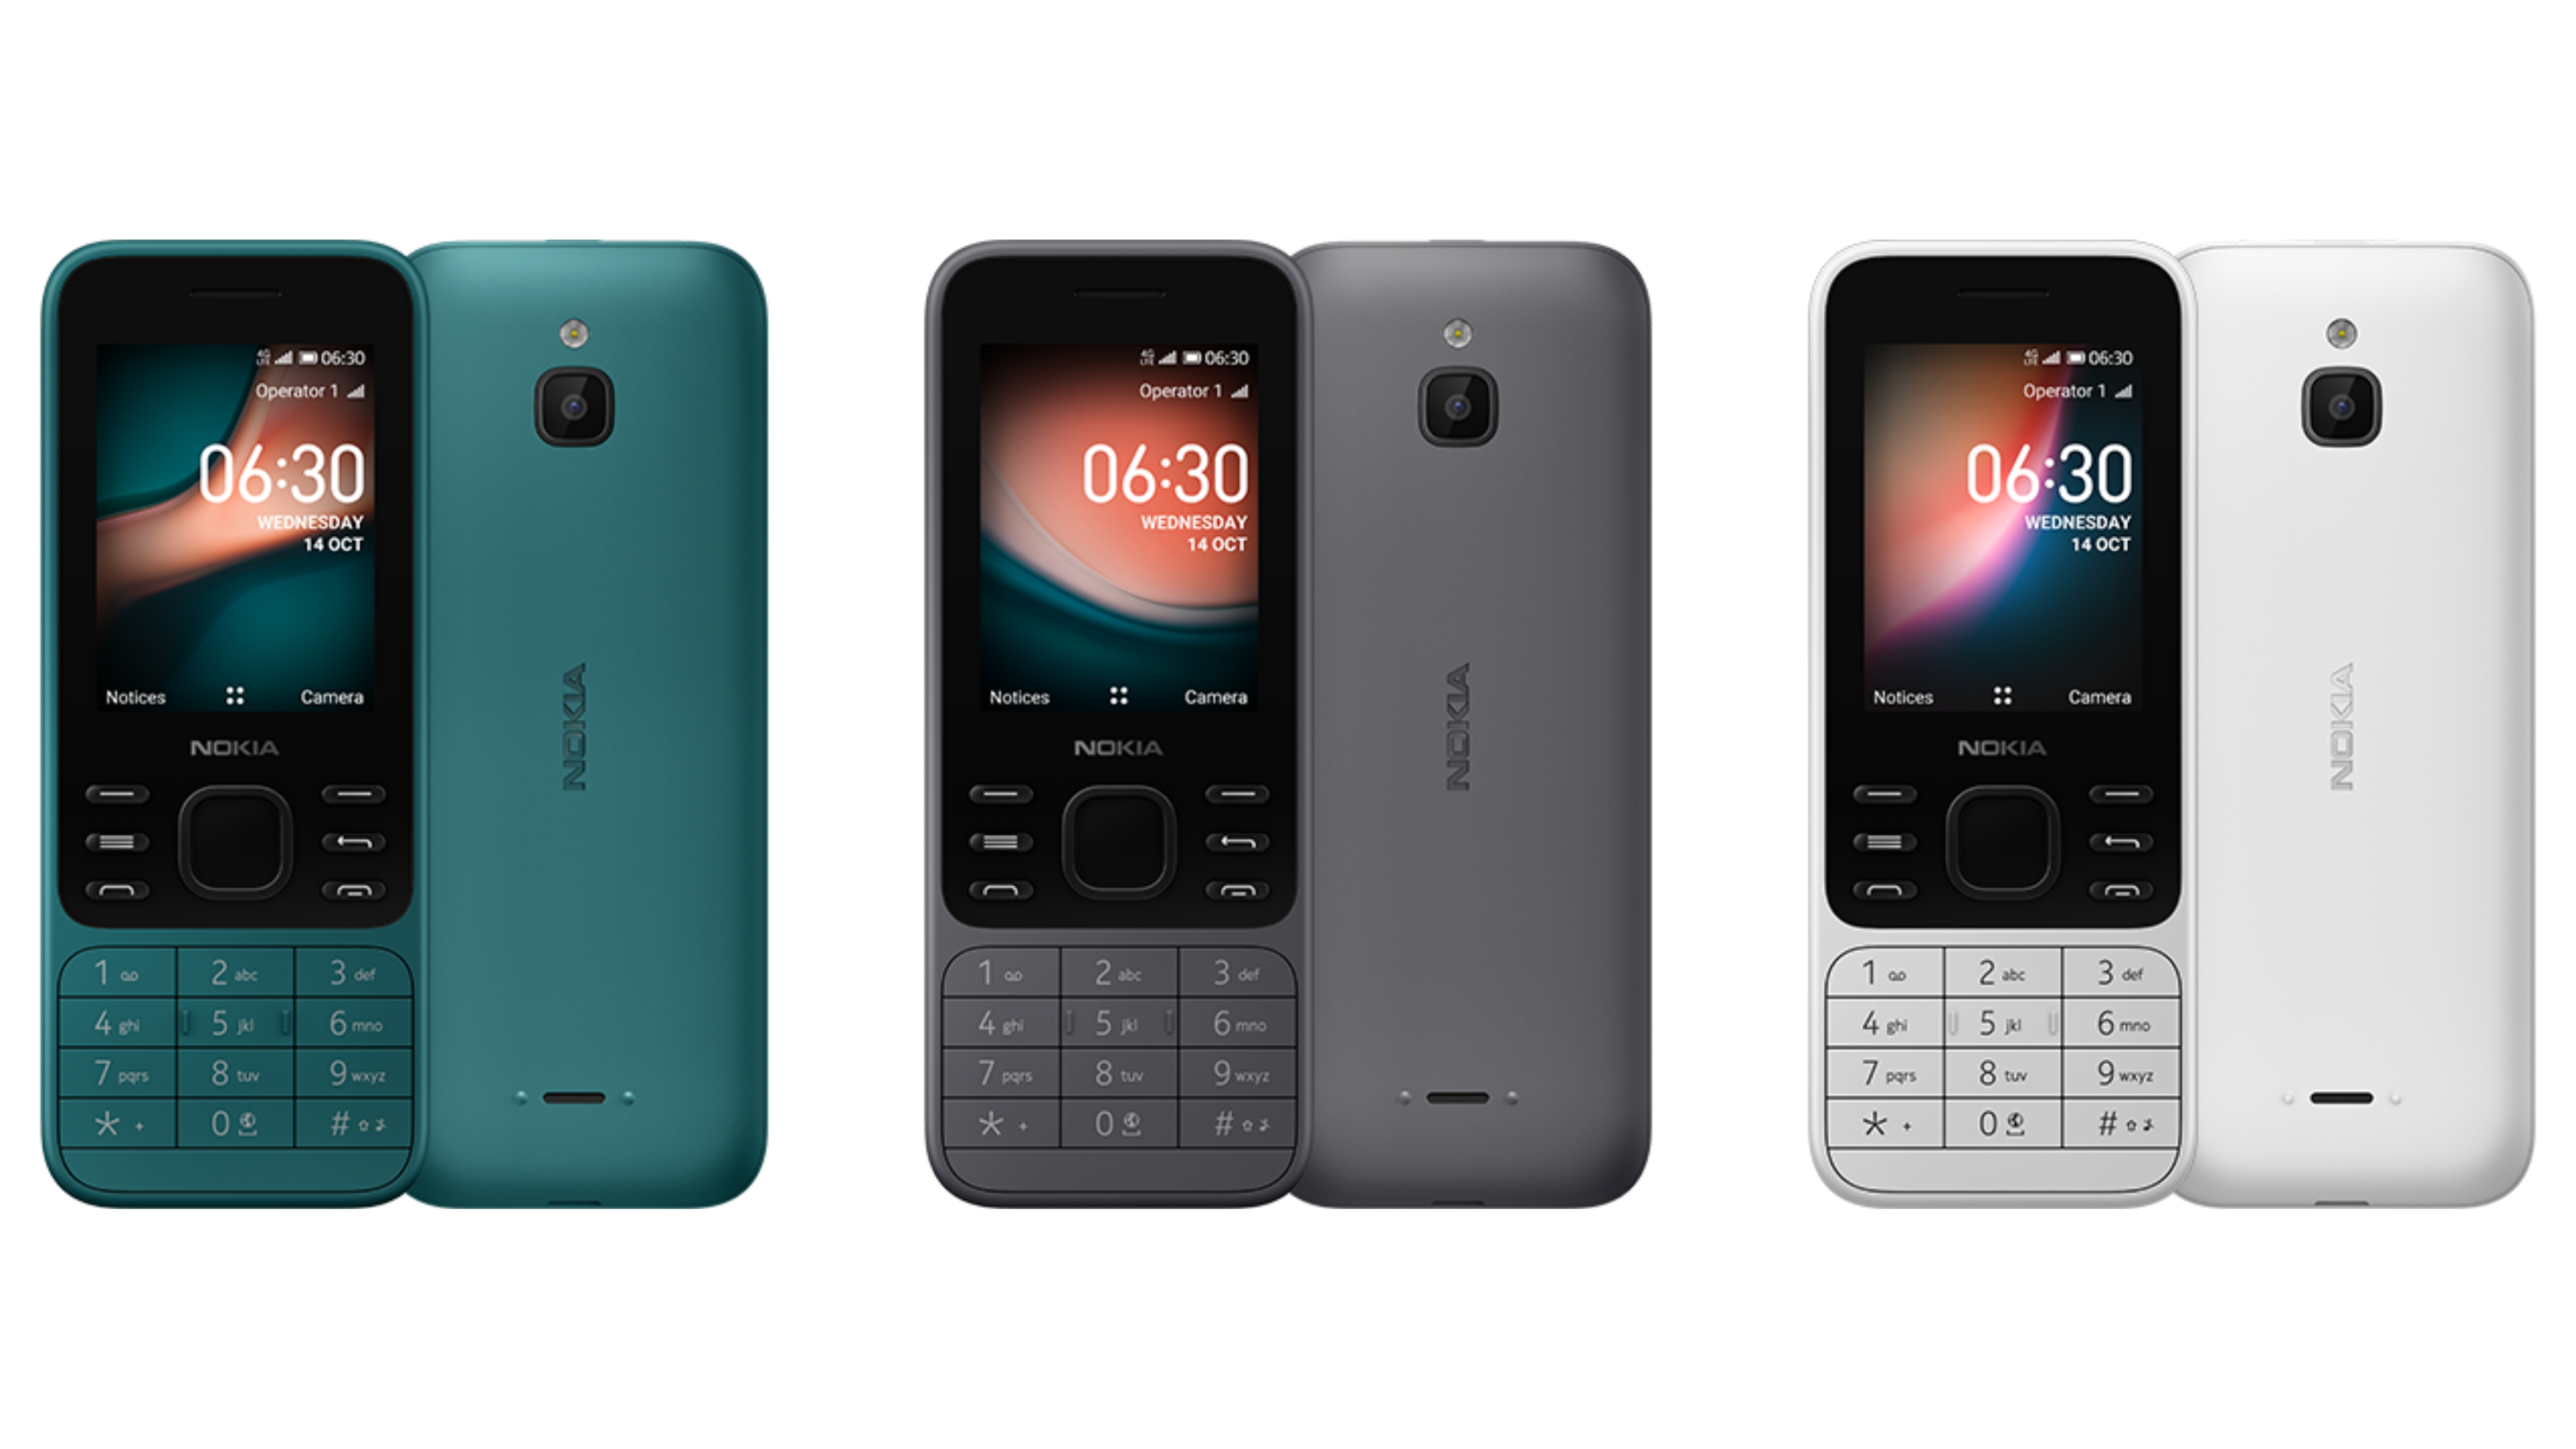 Nokia 8000 4g und Nokia 6300 4g